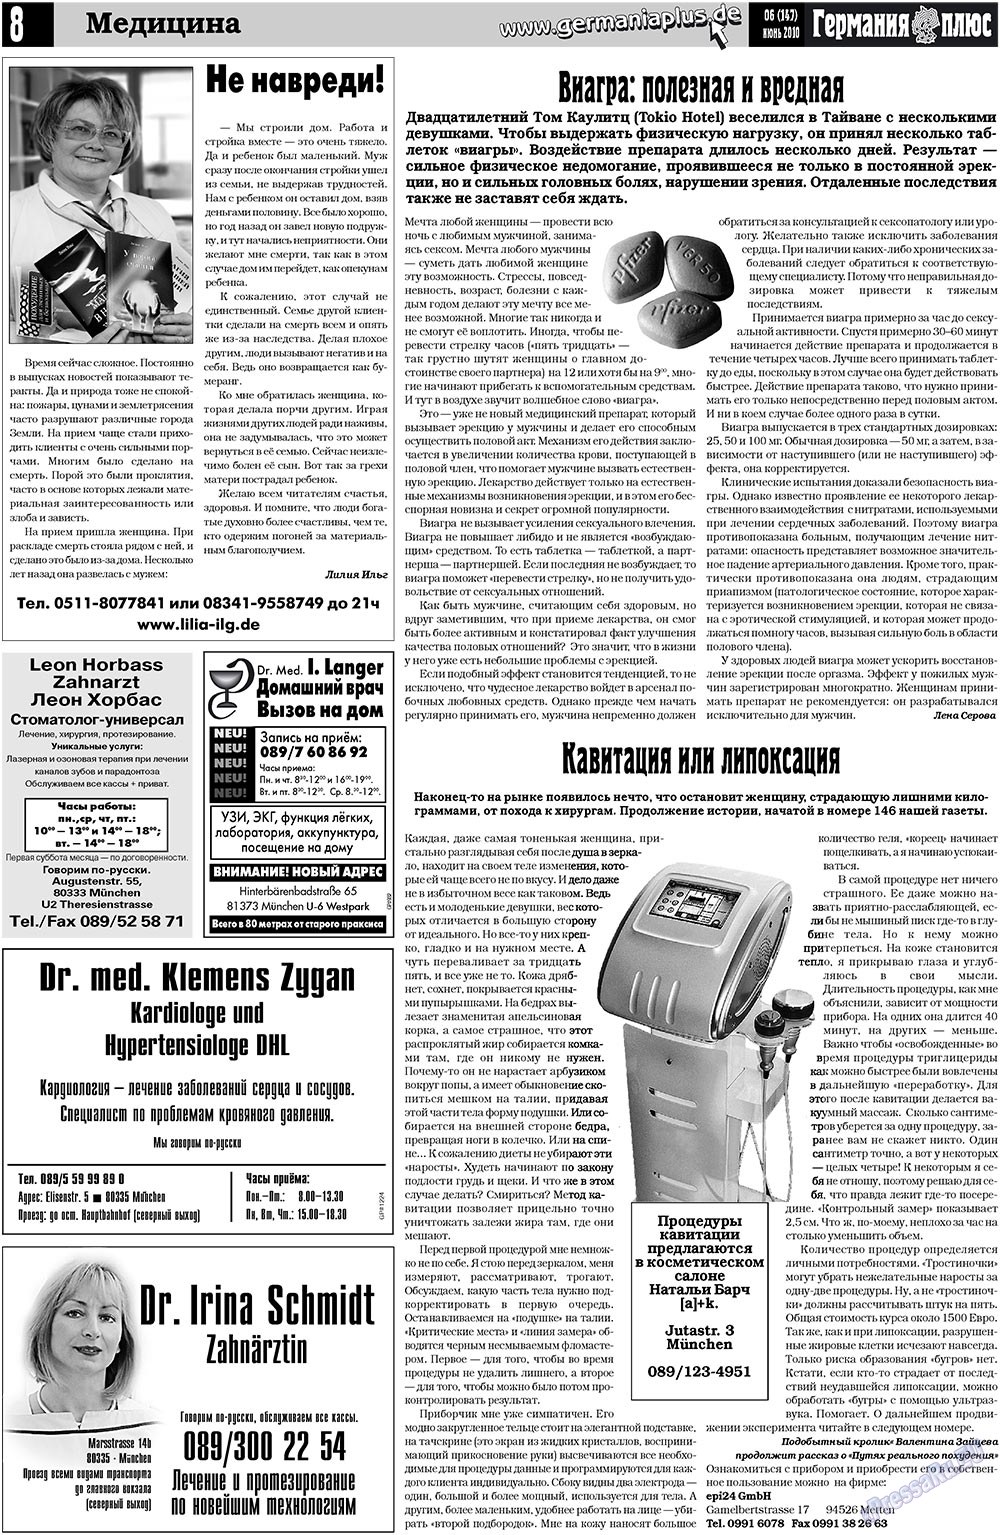 Германия плюс, газета. 2010 №6 стр.8